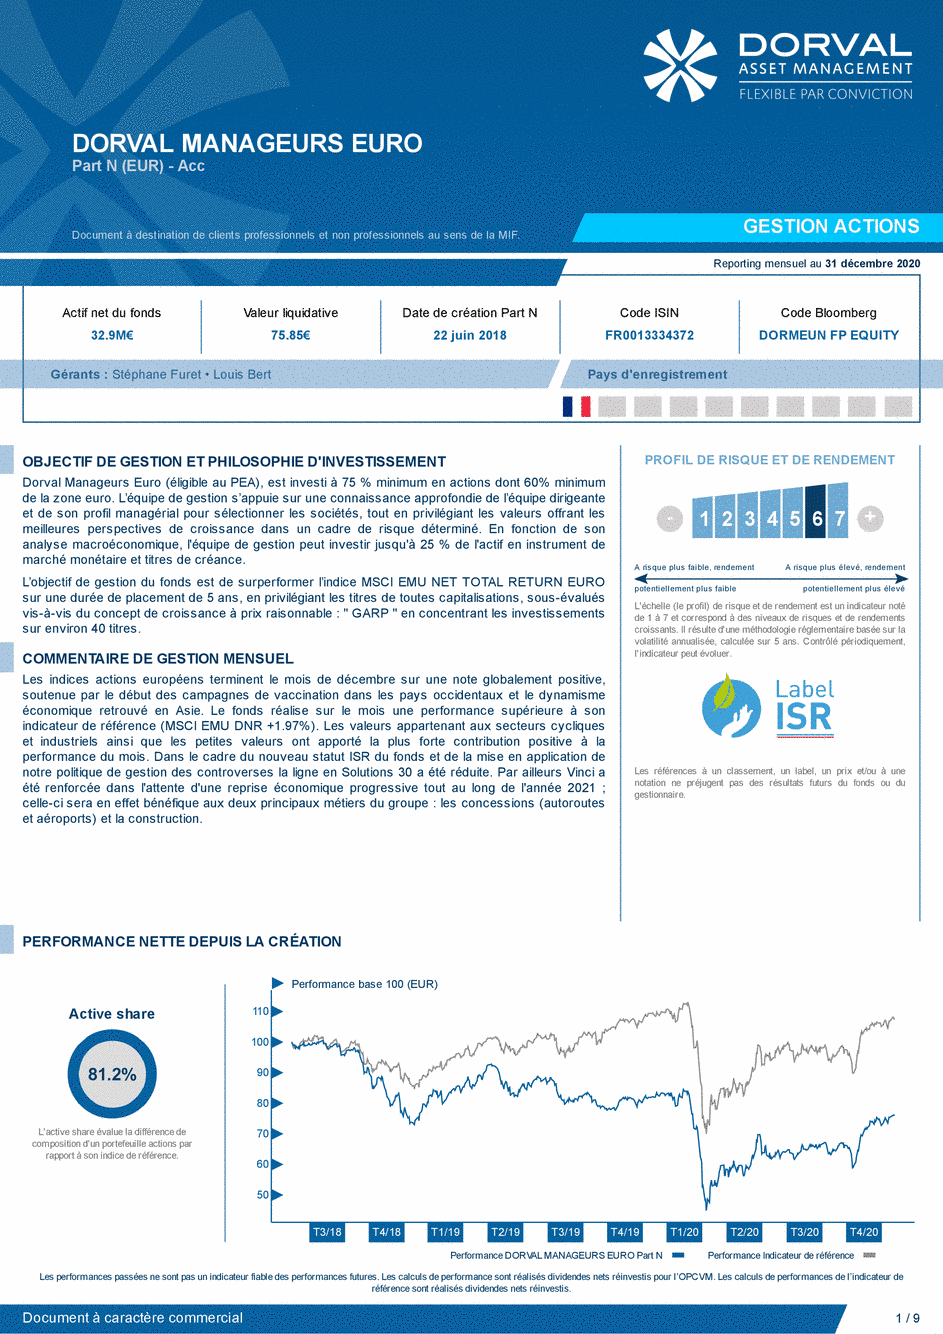 Reporting DORVAL MANAGEURS EURO Part N - 31/12/2020 - Français